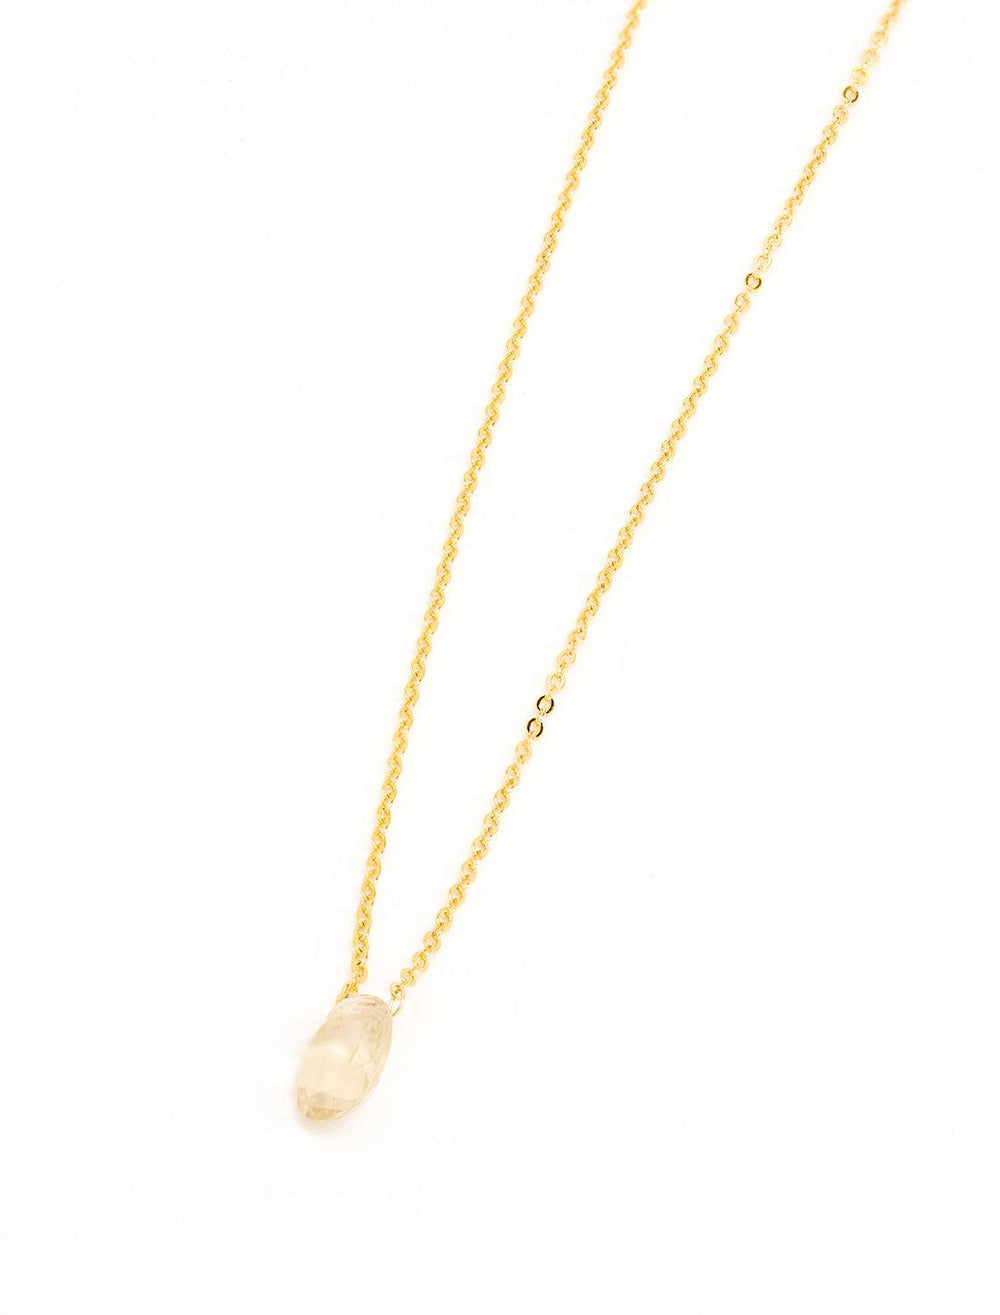 champagne quartz solitare necklace (2)